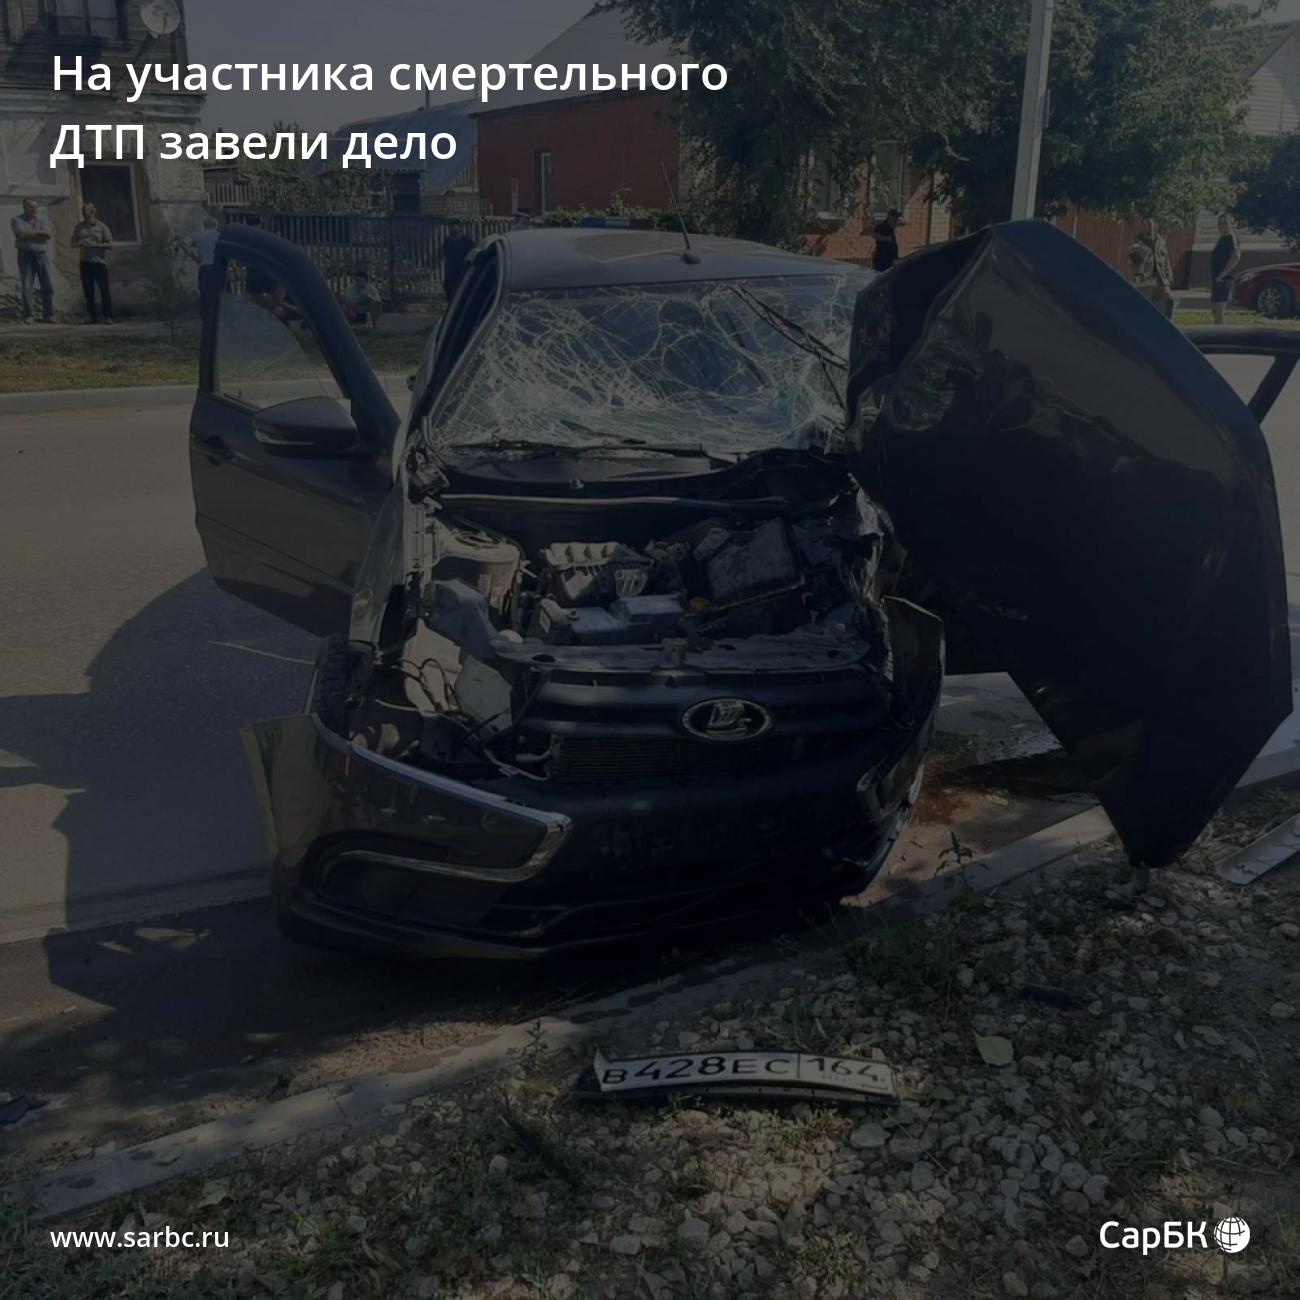 Авария с Грантой 26 08 22 в Ростовской области.